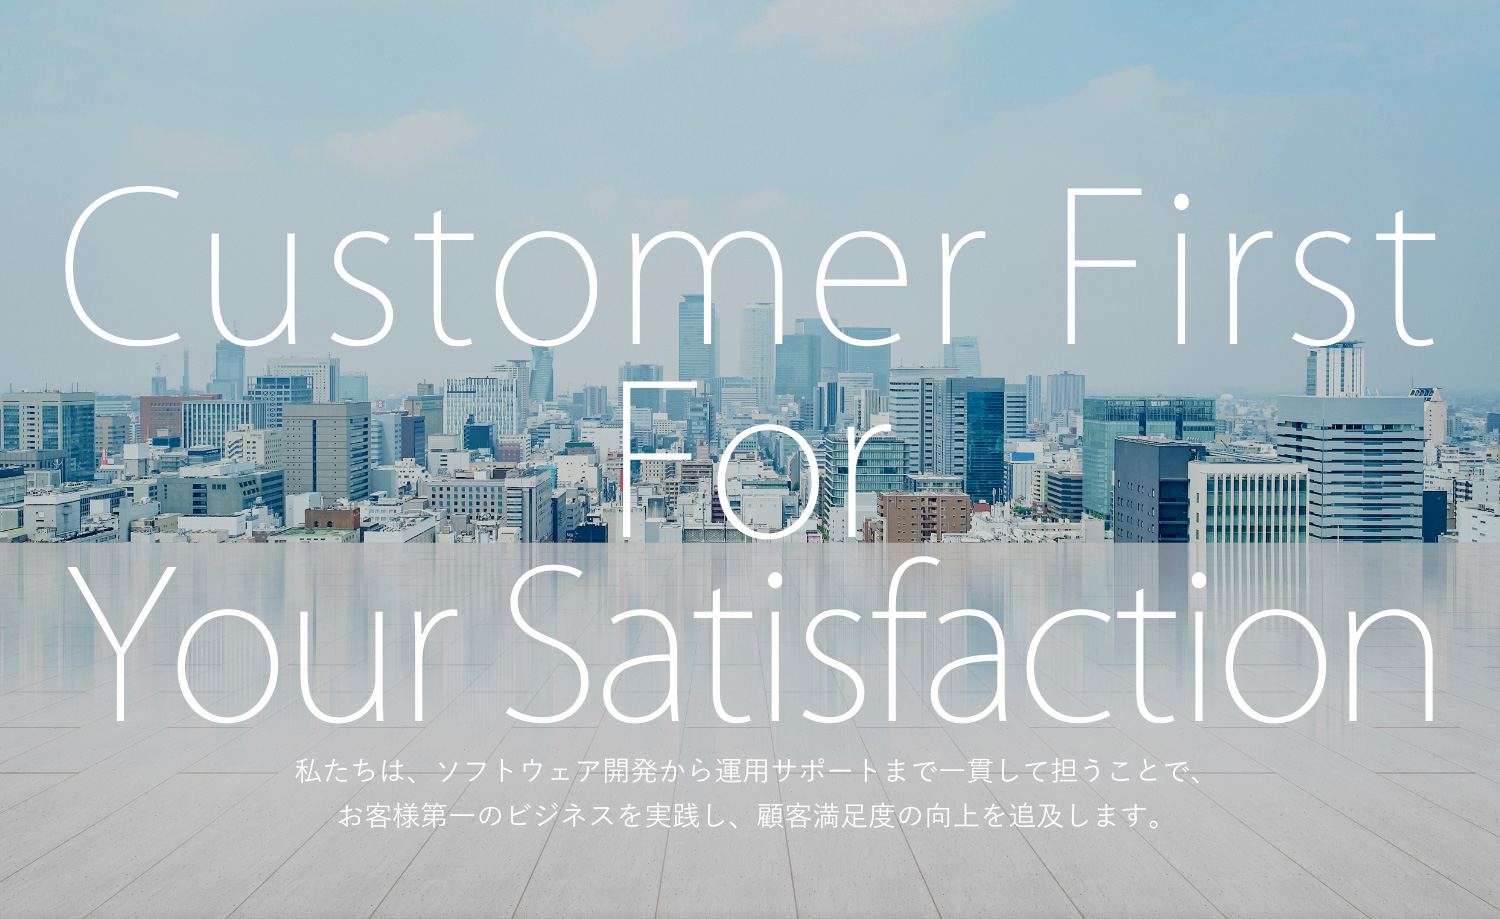 Customer First For Your Satisfaction 私たちは、お客様第一のビジネスを実践し、顧客満足度の向上を追及します。